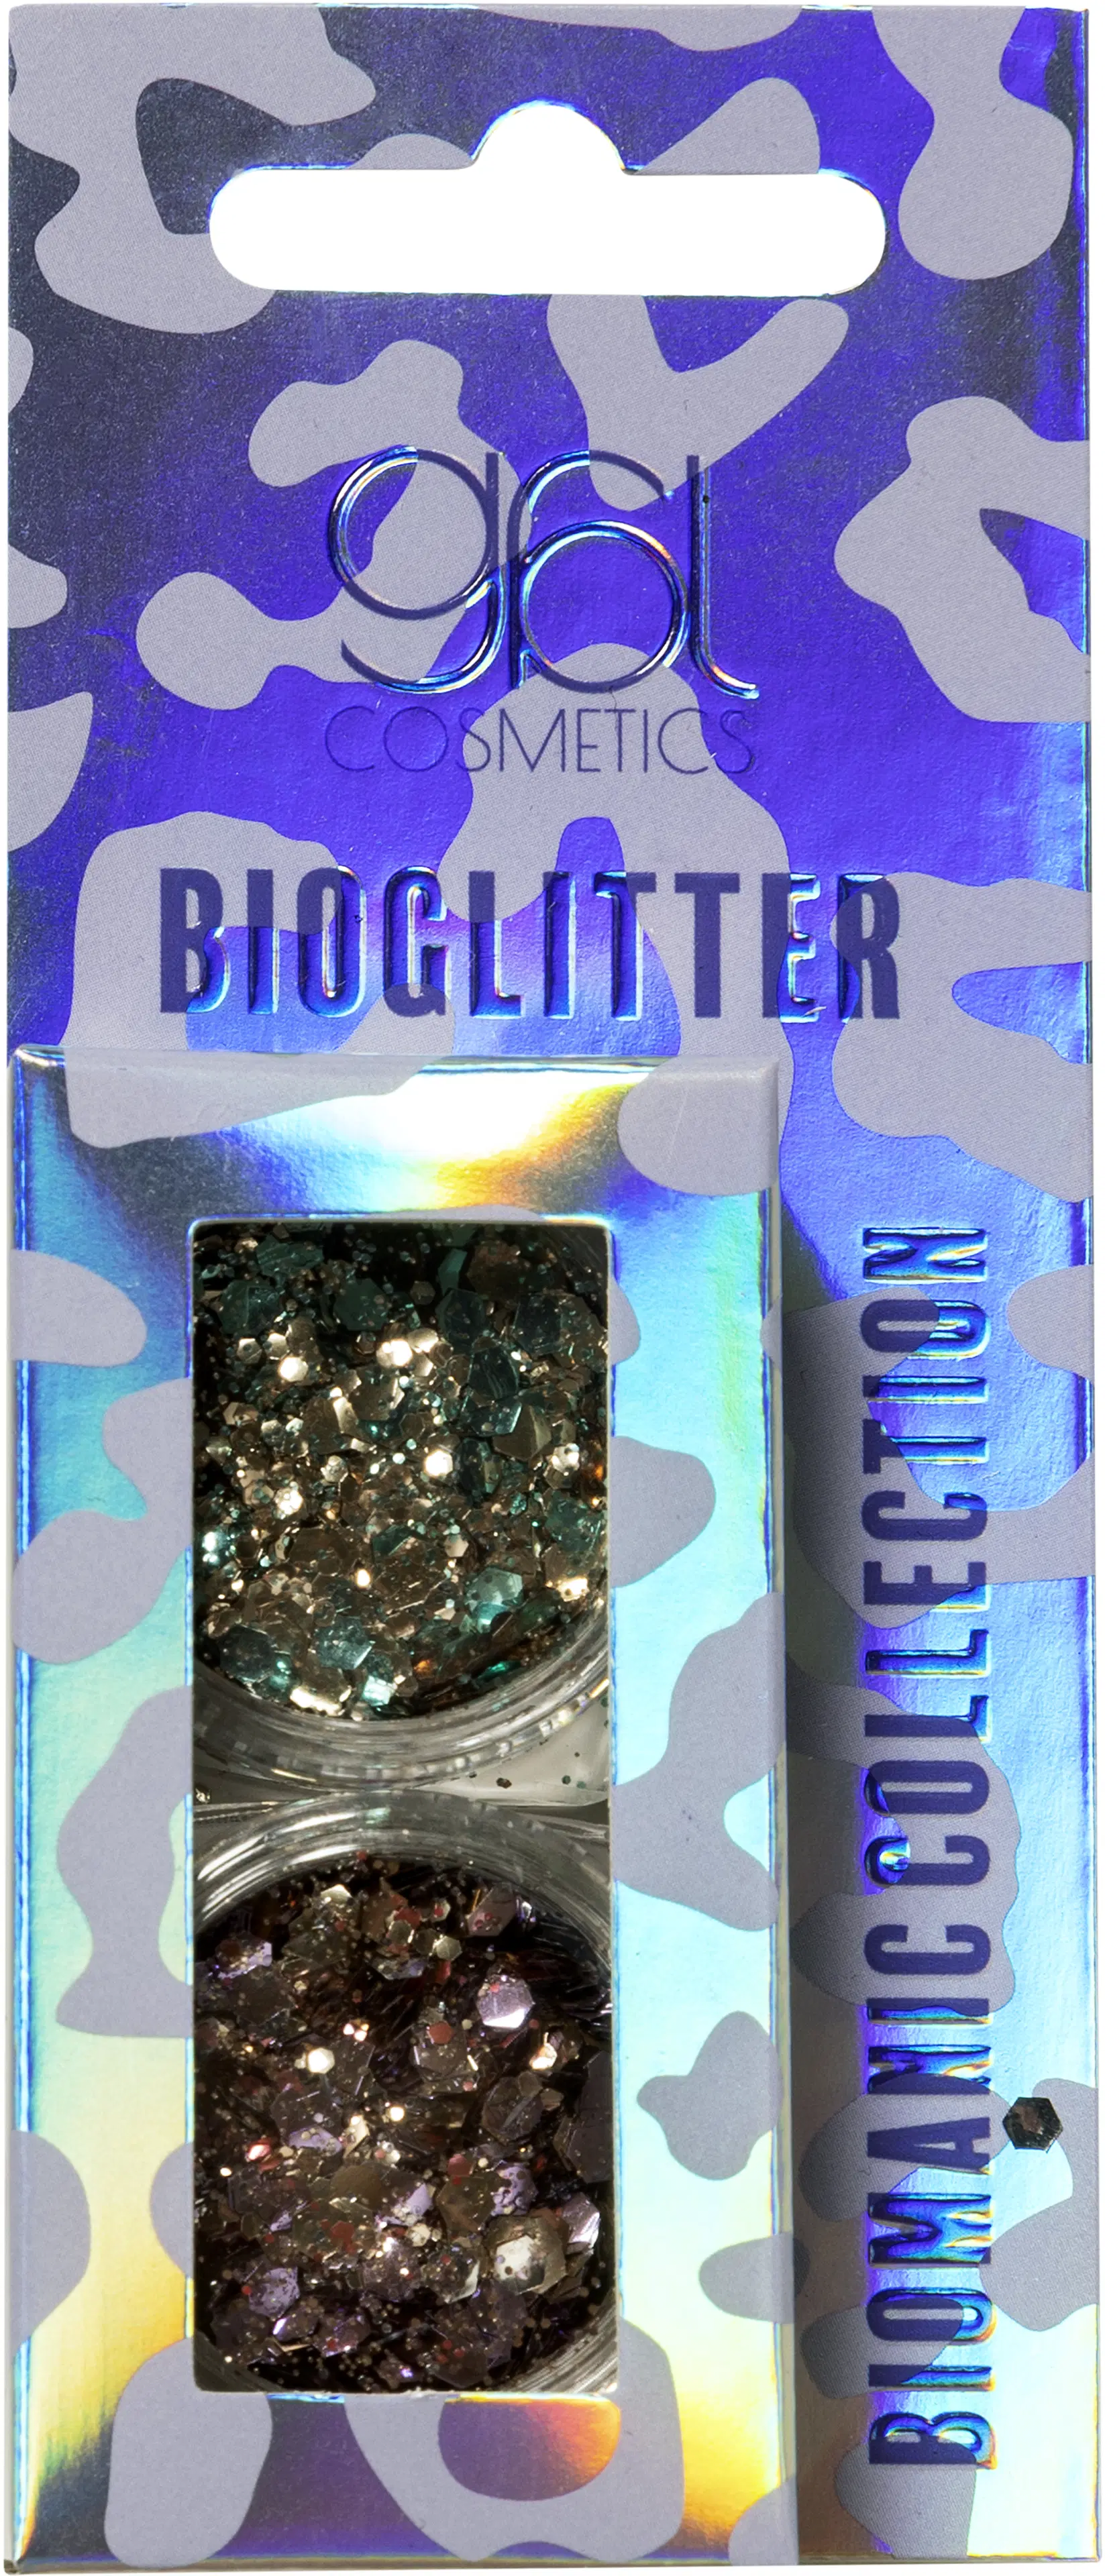 GBL Cosmetics Biomanic bioglitter quantum